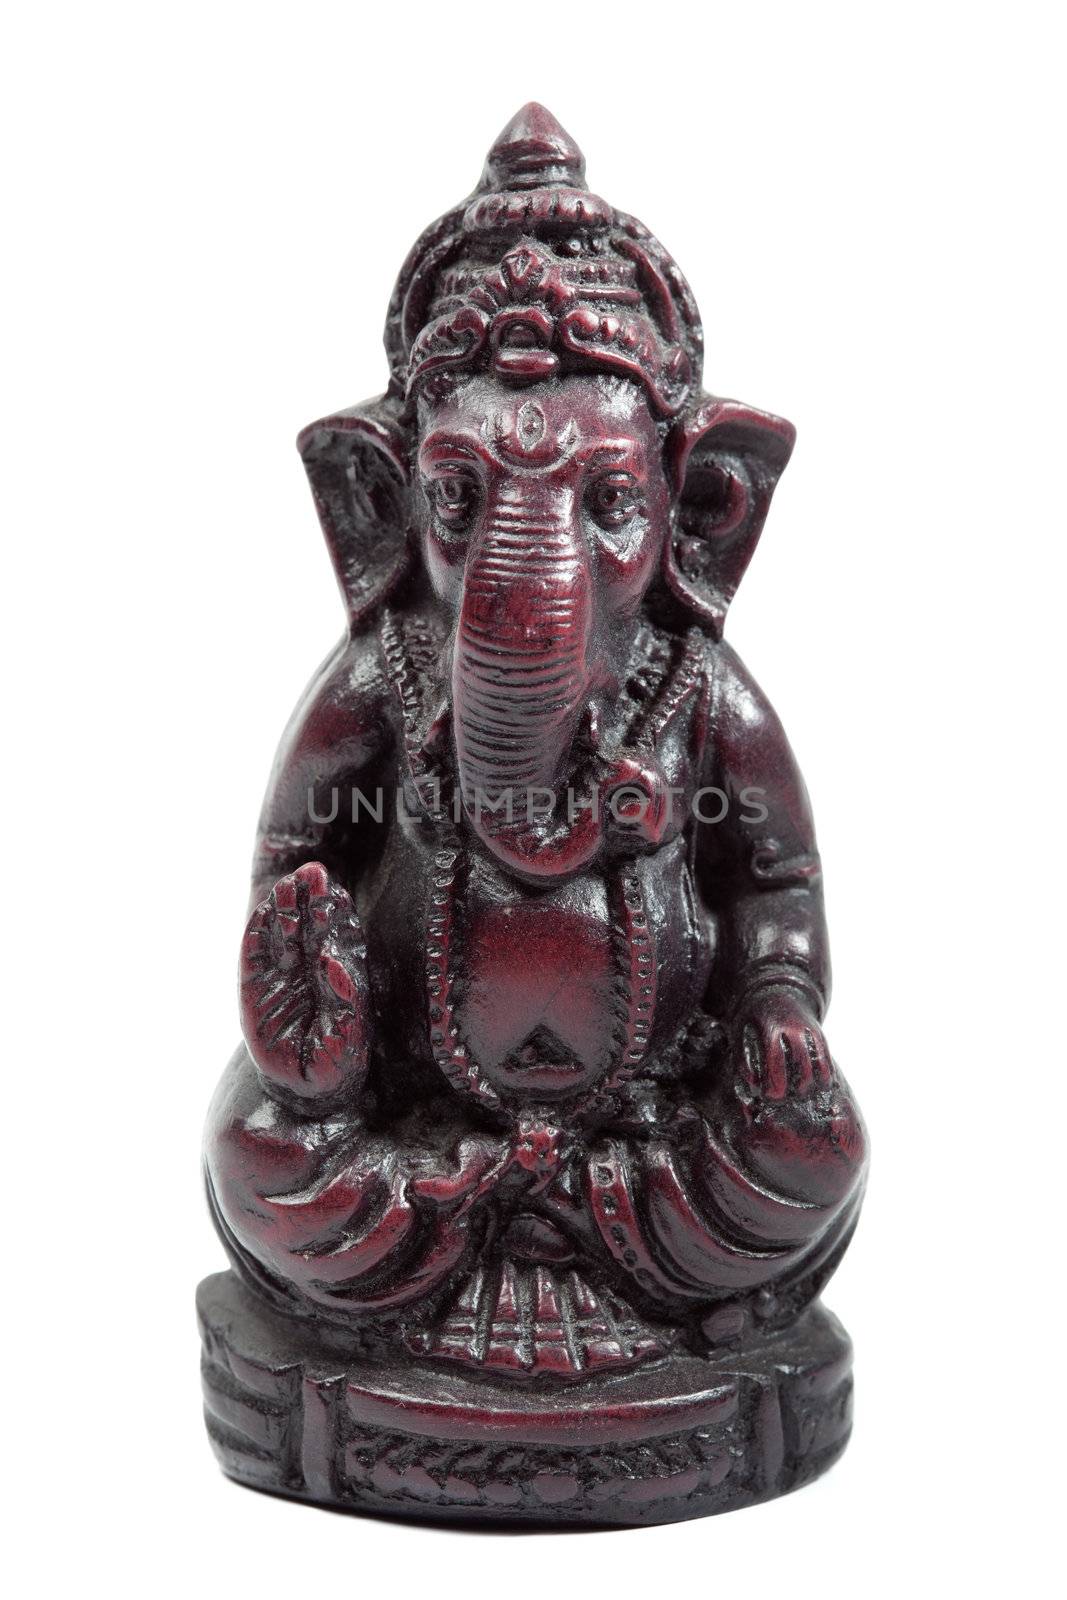 Indian Hindu God Ganesh (Ganesha) figurine isolated on white